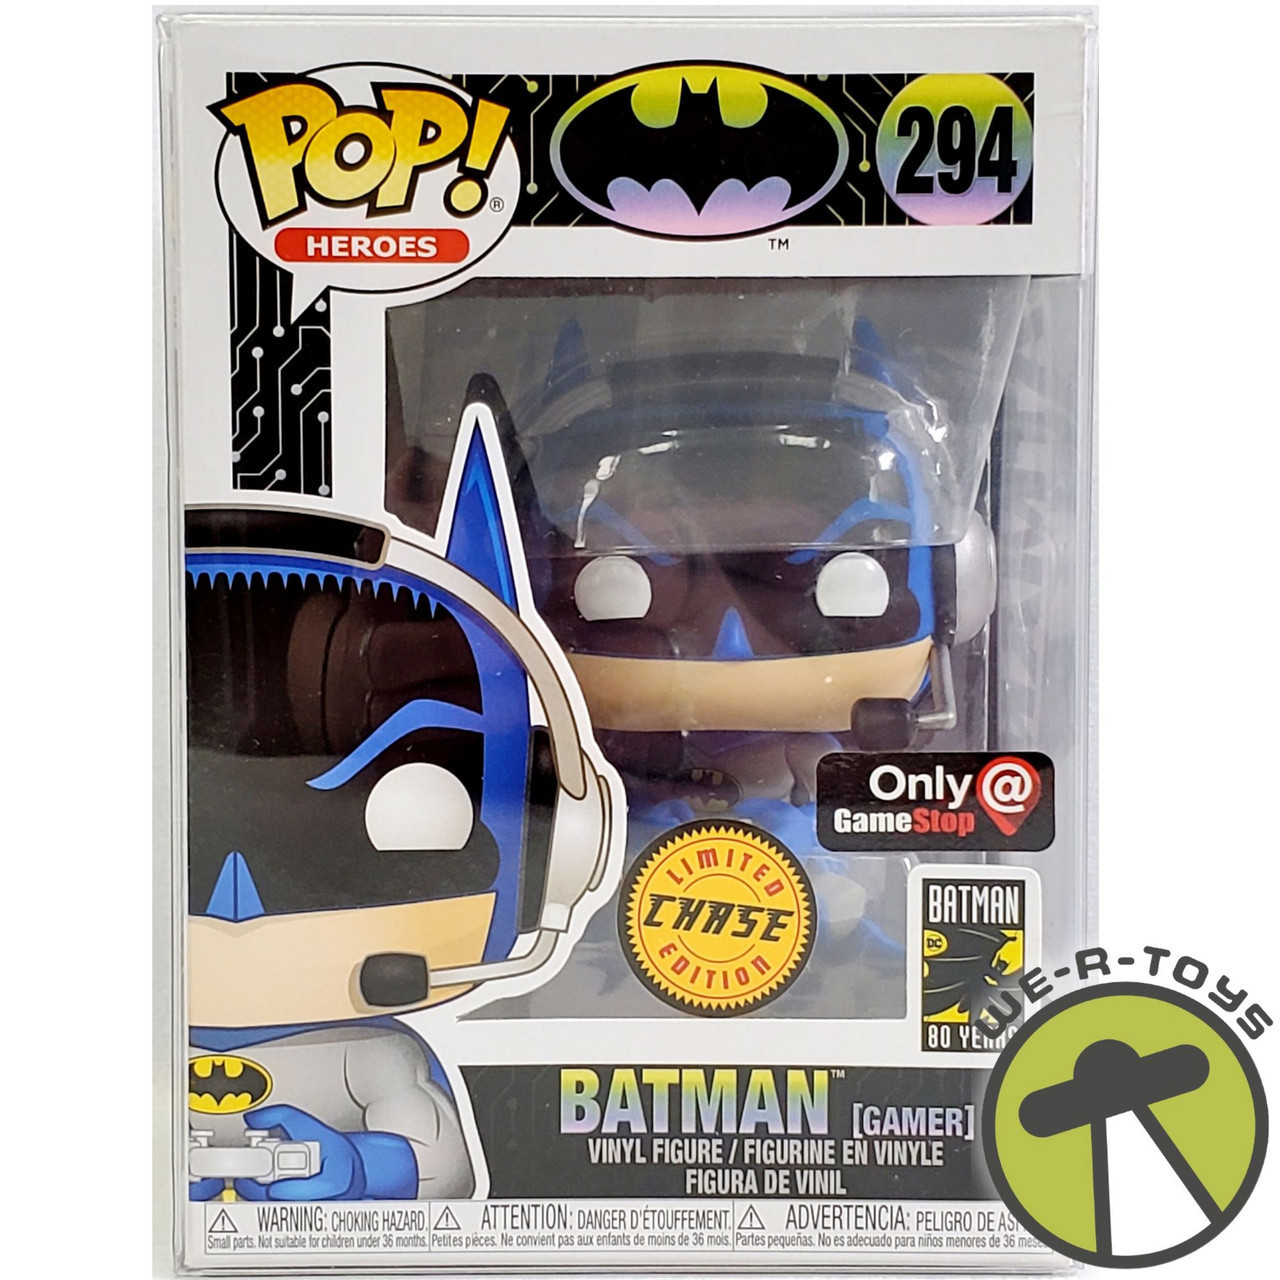 Funko Super Deluxe Vinyl: DC Heroes Batman Toy Figure